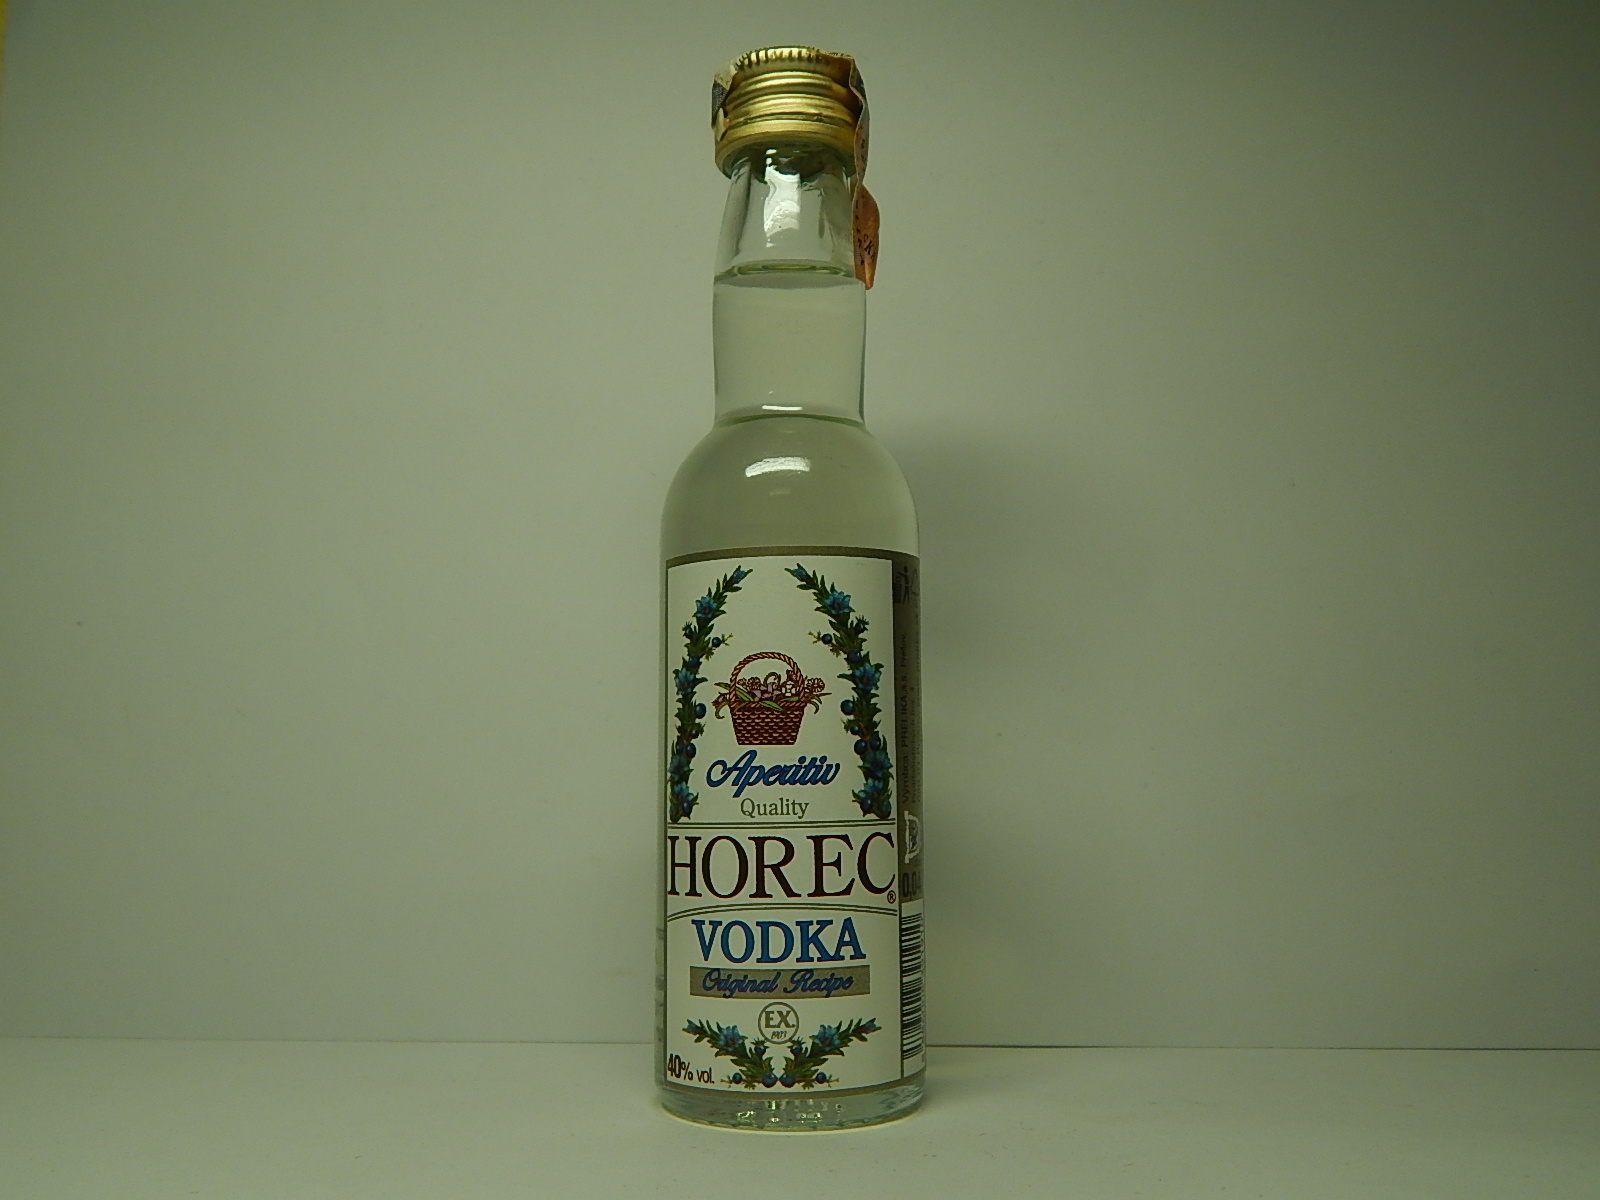 3. HOREC Vodka